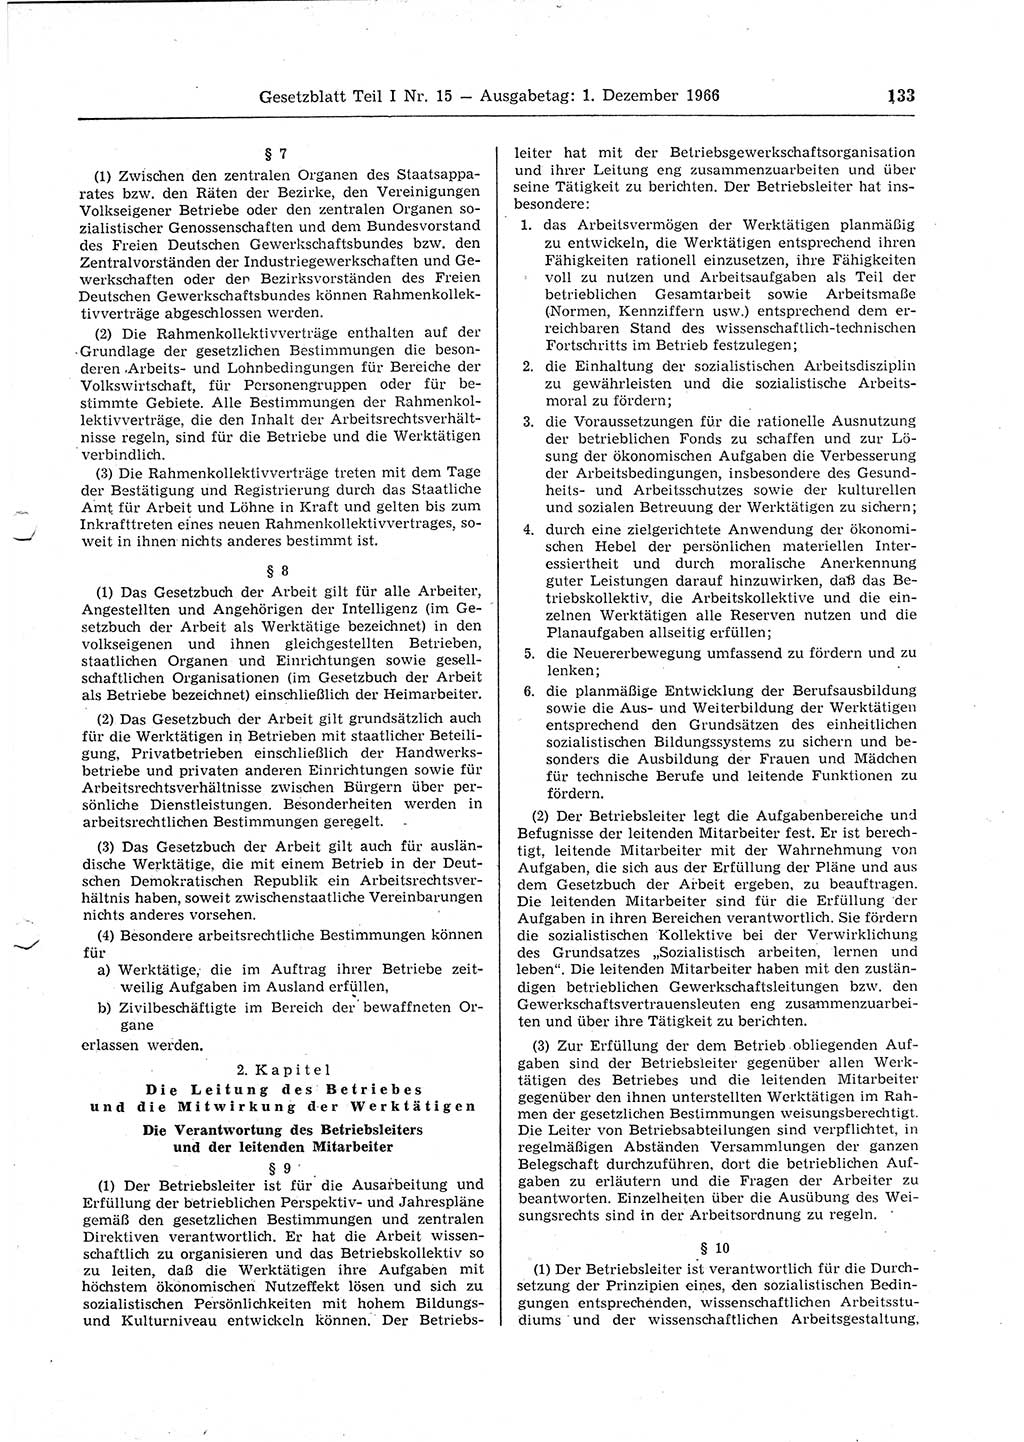 Gesetzblatt (GBl.) der Deutschen Demokratischen Republik (DDR) Teil Ⅰ 1966, Seite 133 (GBl. DDR Ⅰ 1966, S. 133)